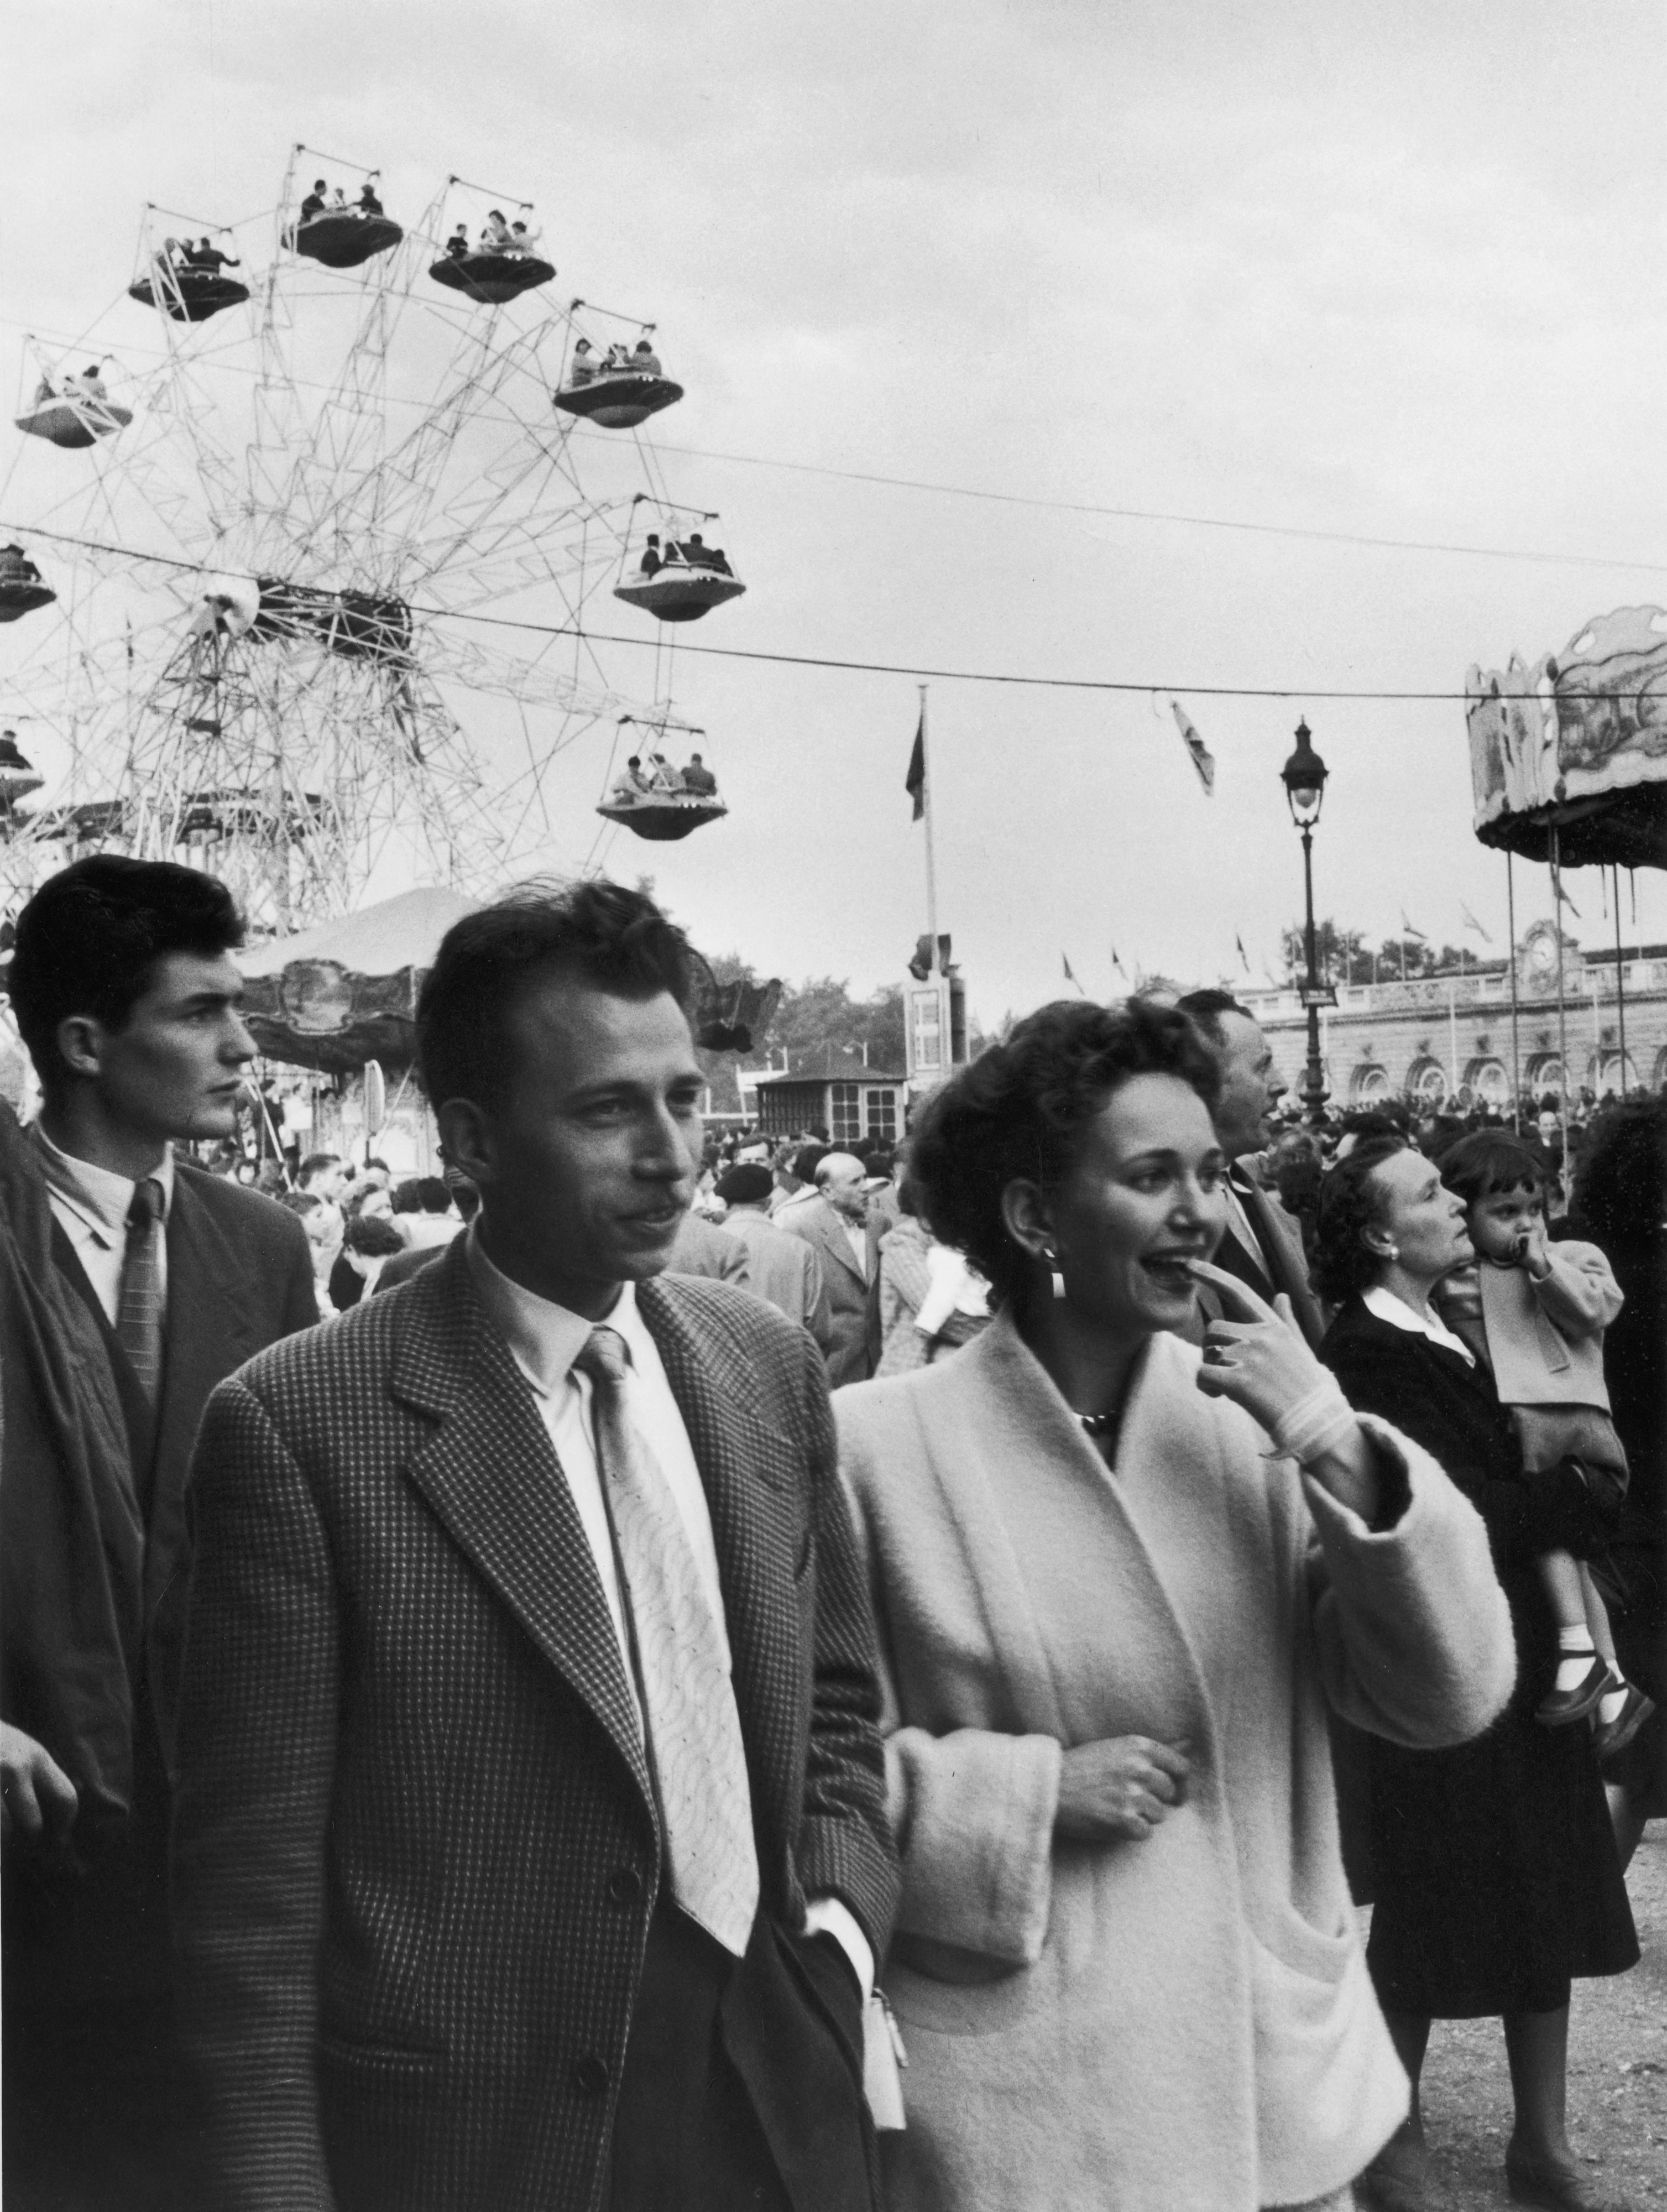 La foire, fête, esplanade des Invalides, Paris, 1955